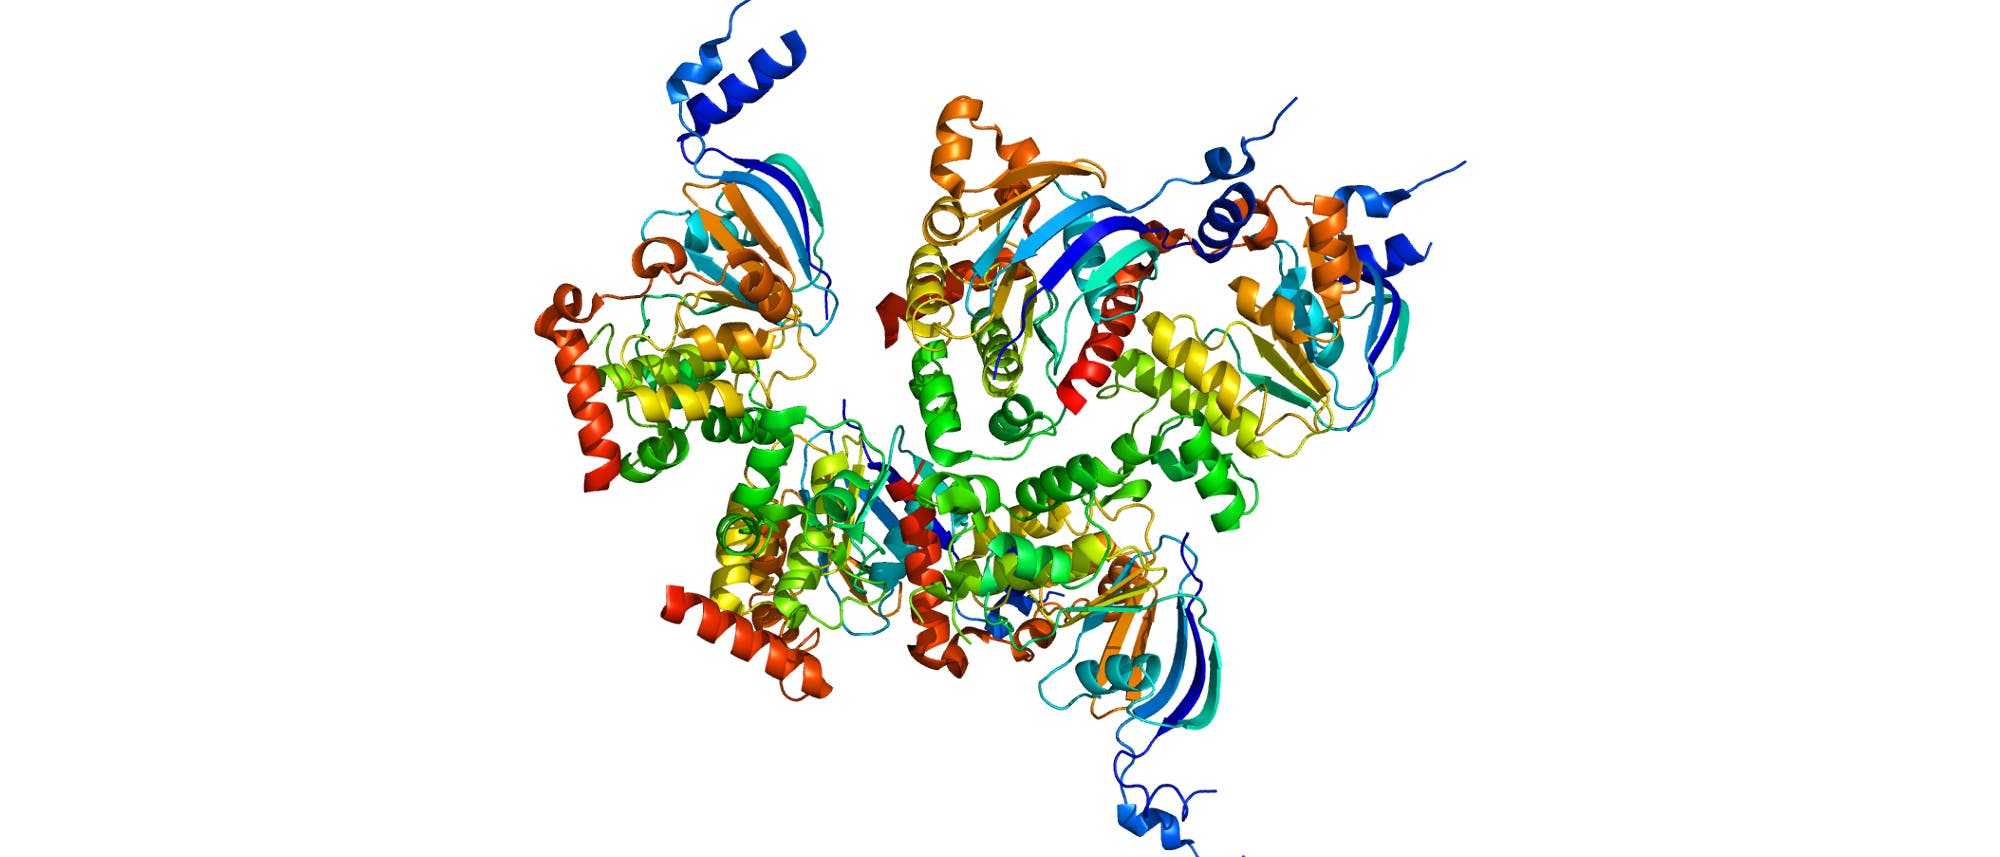 Der Cystic Fibrosis Transmembrane Conductance Regulator (CFTR) ist ein auf der Oberfläche von Zellen festsitzendes Protein.